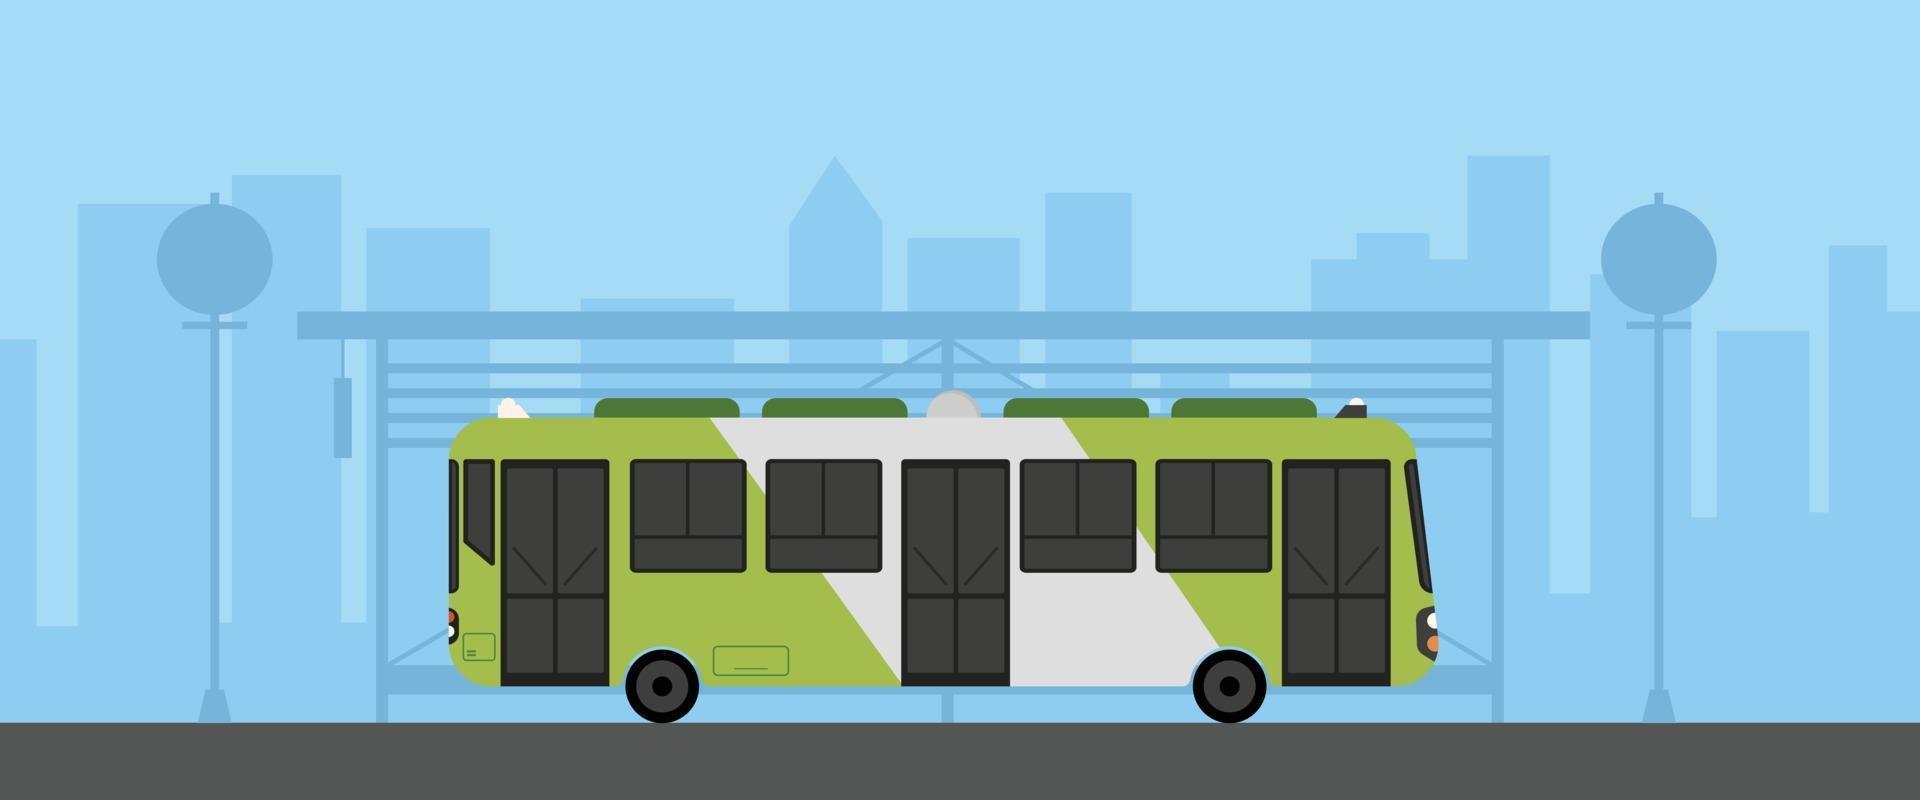 platt grön buss med busshållplats i stadsbilden vektorillustration. buss på huvudgatan med stadsbilden. stad med busshållplats vektor